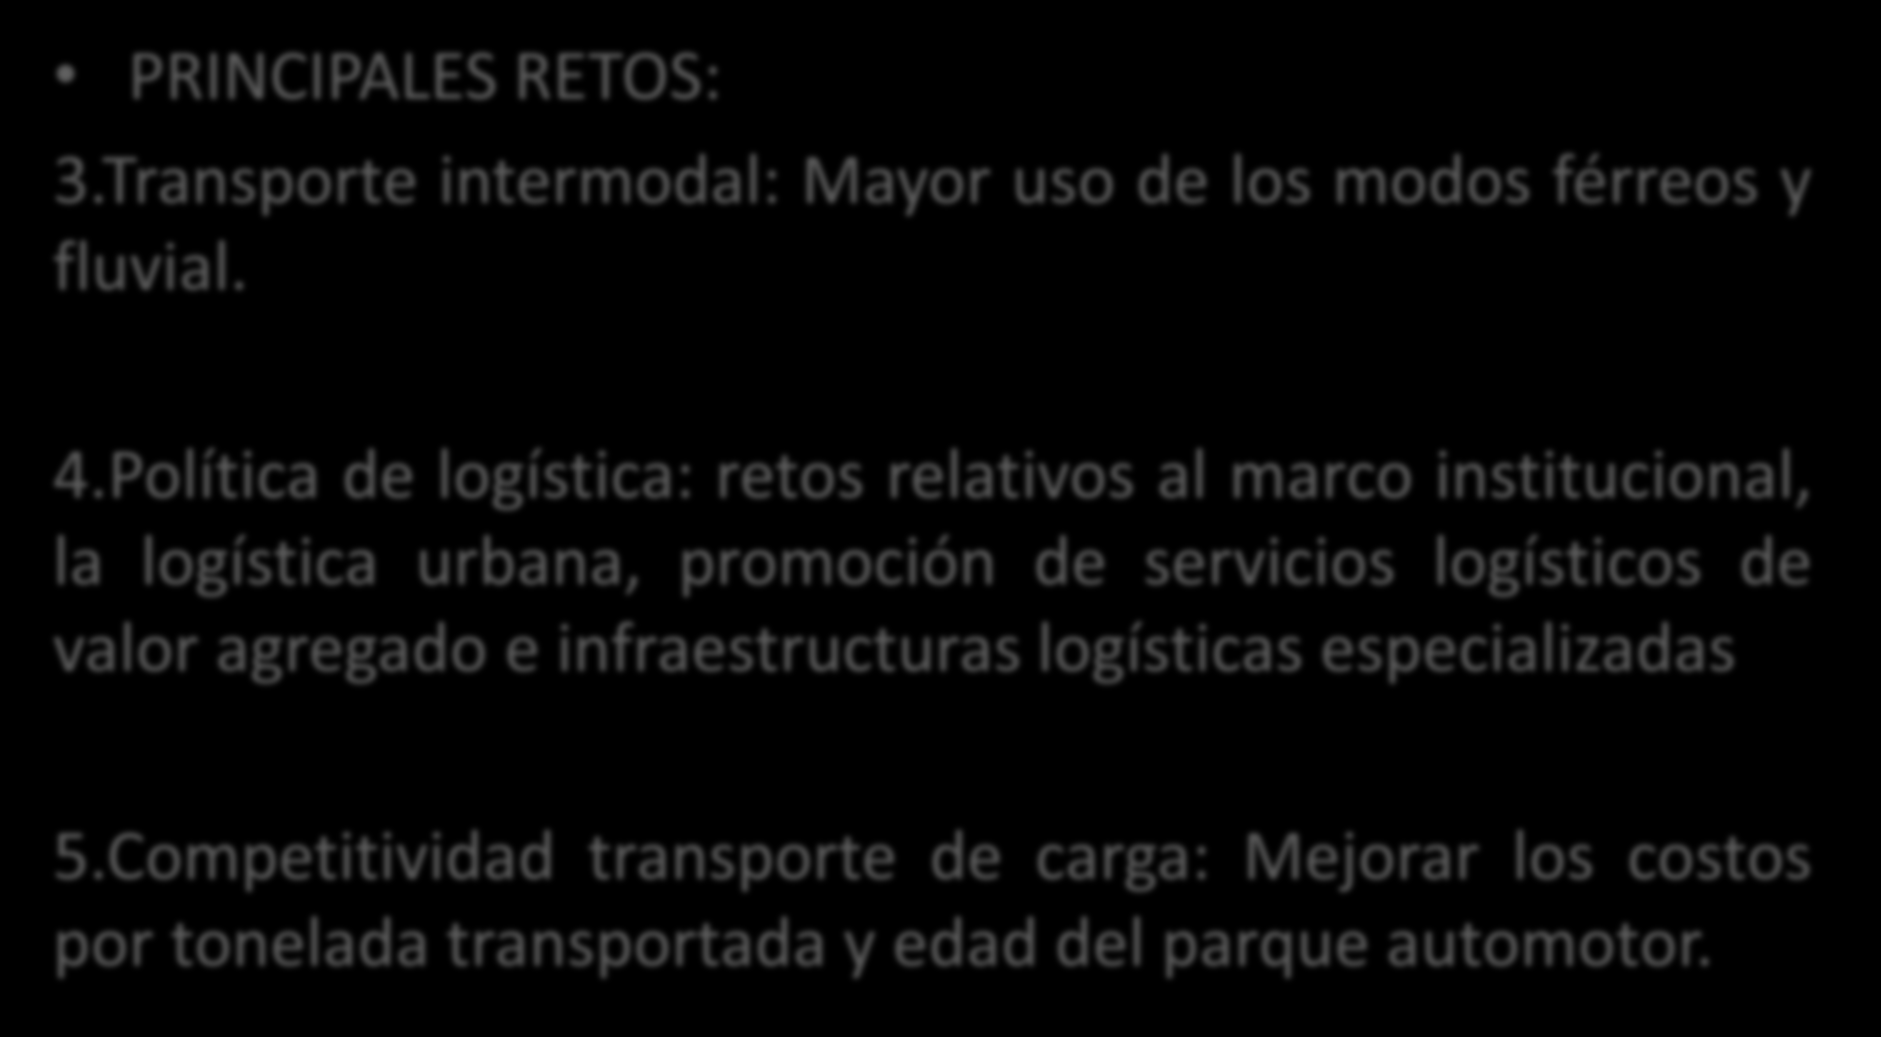 INFRAESTRUCTURA: PRINCIPAL CUELLO DE BOTELLA PRINCIPALES RETOS: 3.Transporte intermodal: Mayor uso de los modos férreos y fluvial. 4.